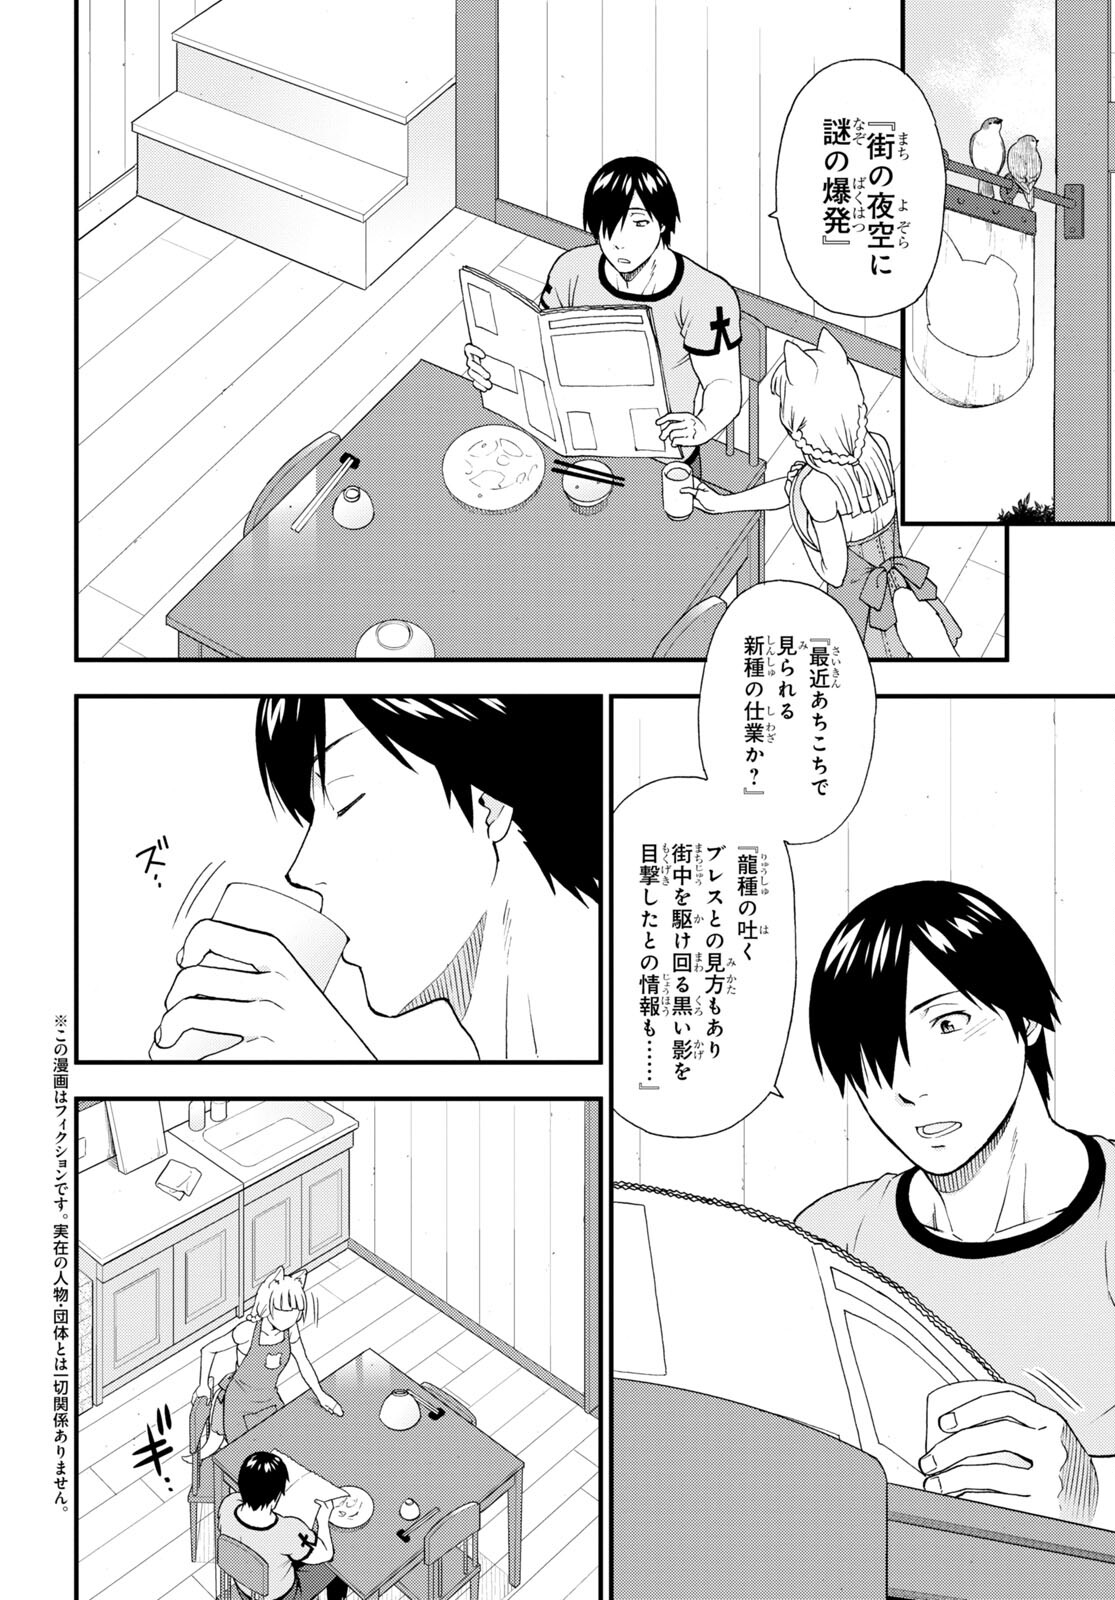 Kemono Michi - Chapter 59 - Page 2